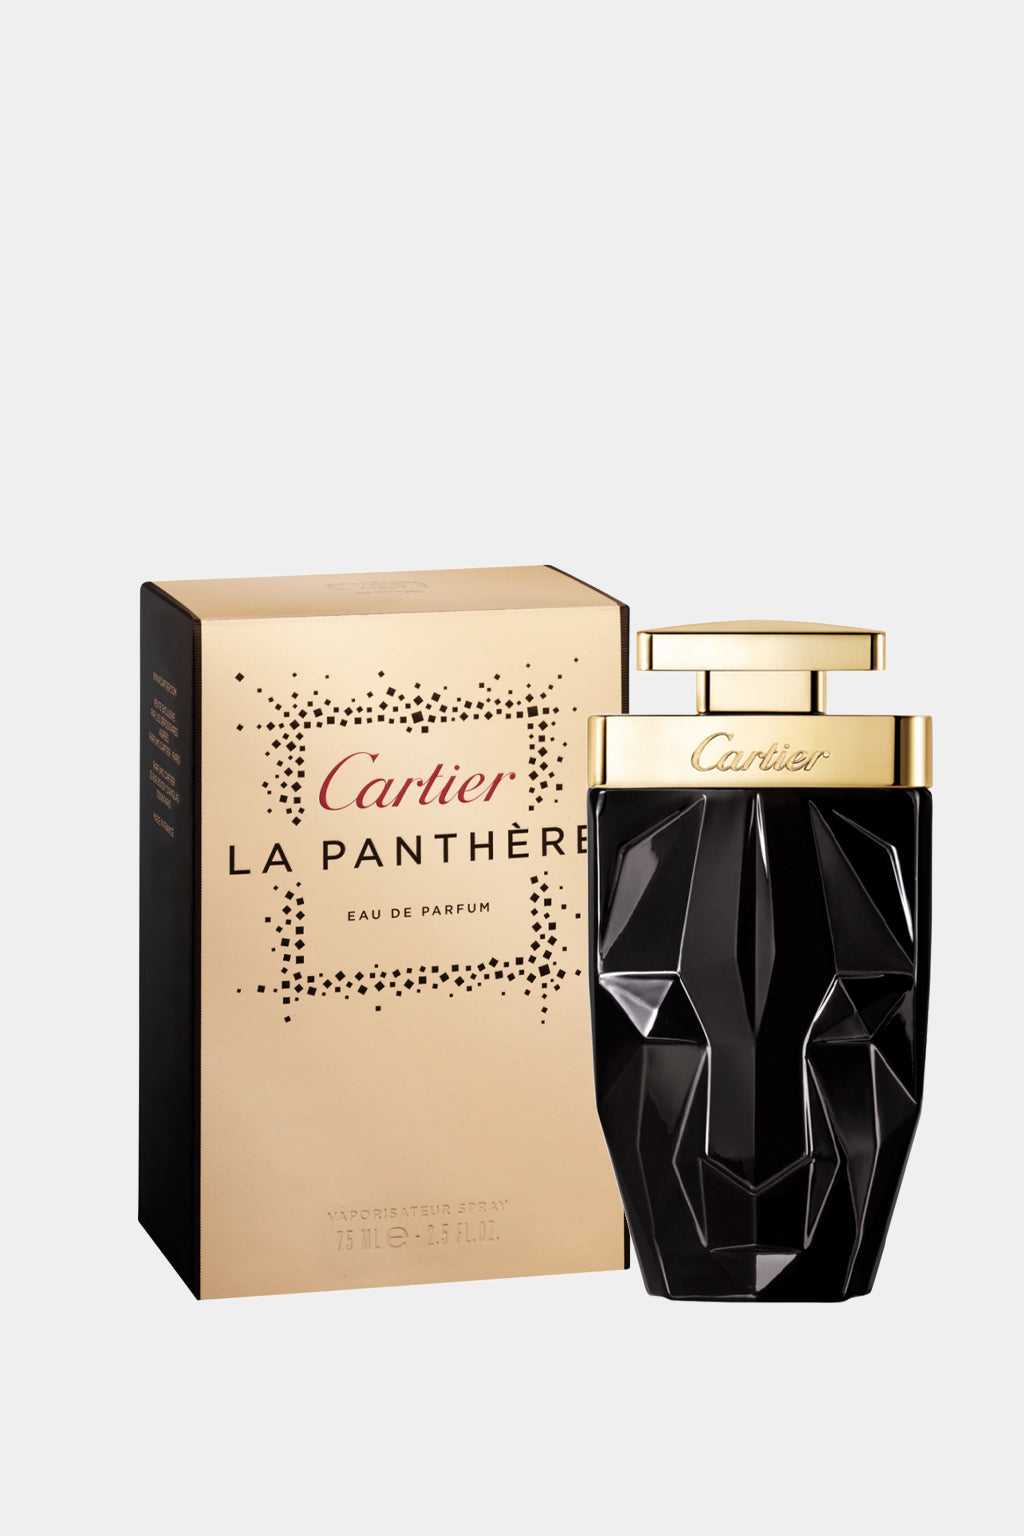 Cartier - La Panthera Limited Edition Eau de Parfum